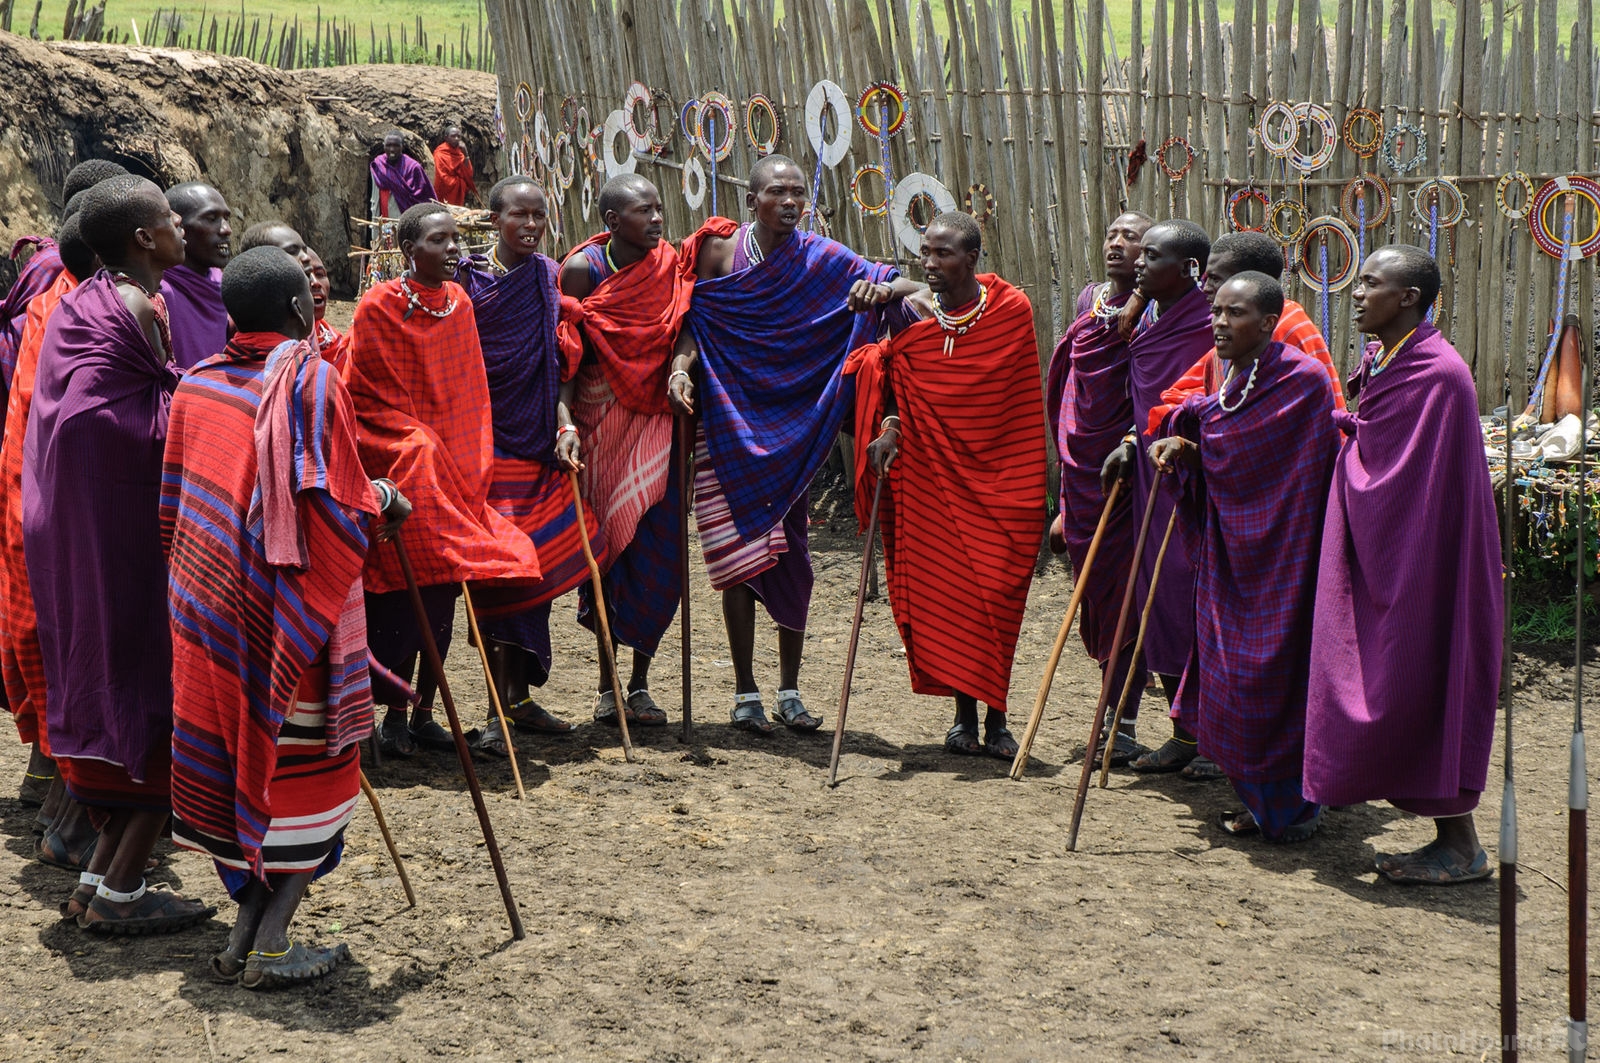 Image of Ngorongoro Caldera by Luka Esenko